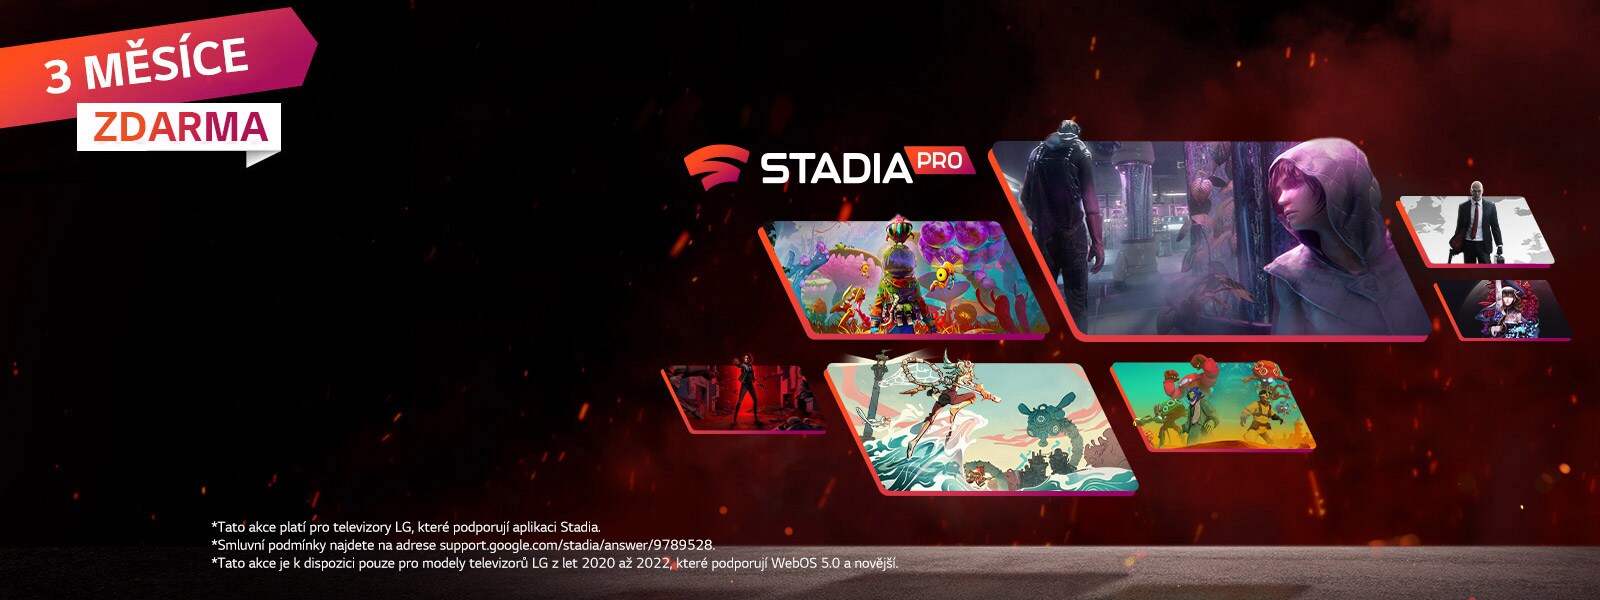 Obrázky několika her, které lze hrát v aplikaci Stadia na tmavém pozadí s červenými jiskrami.